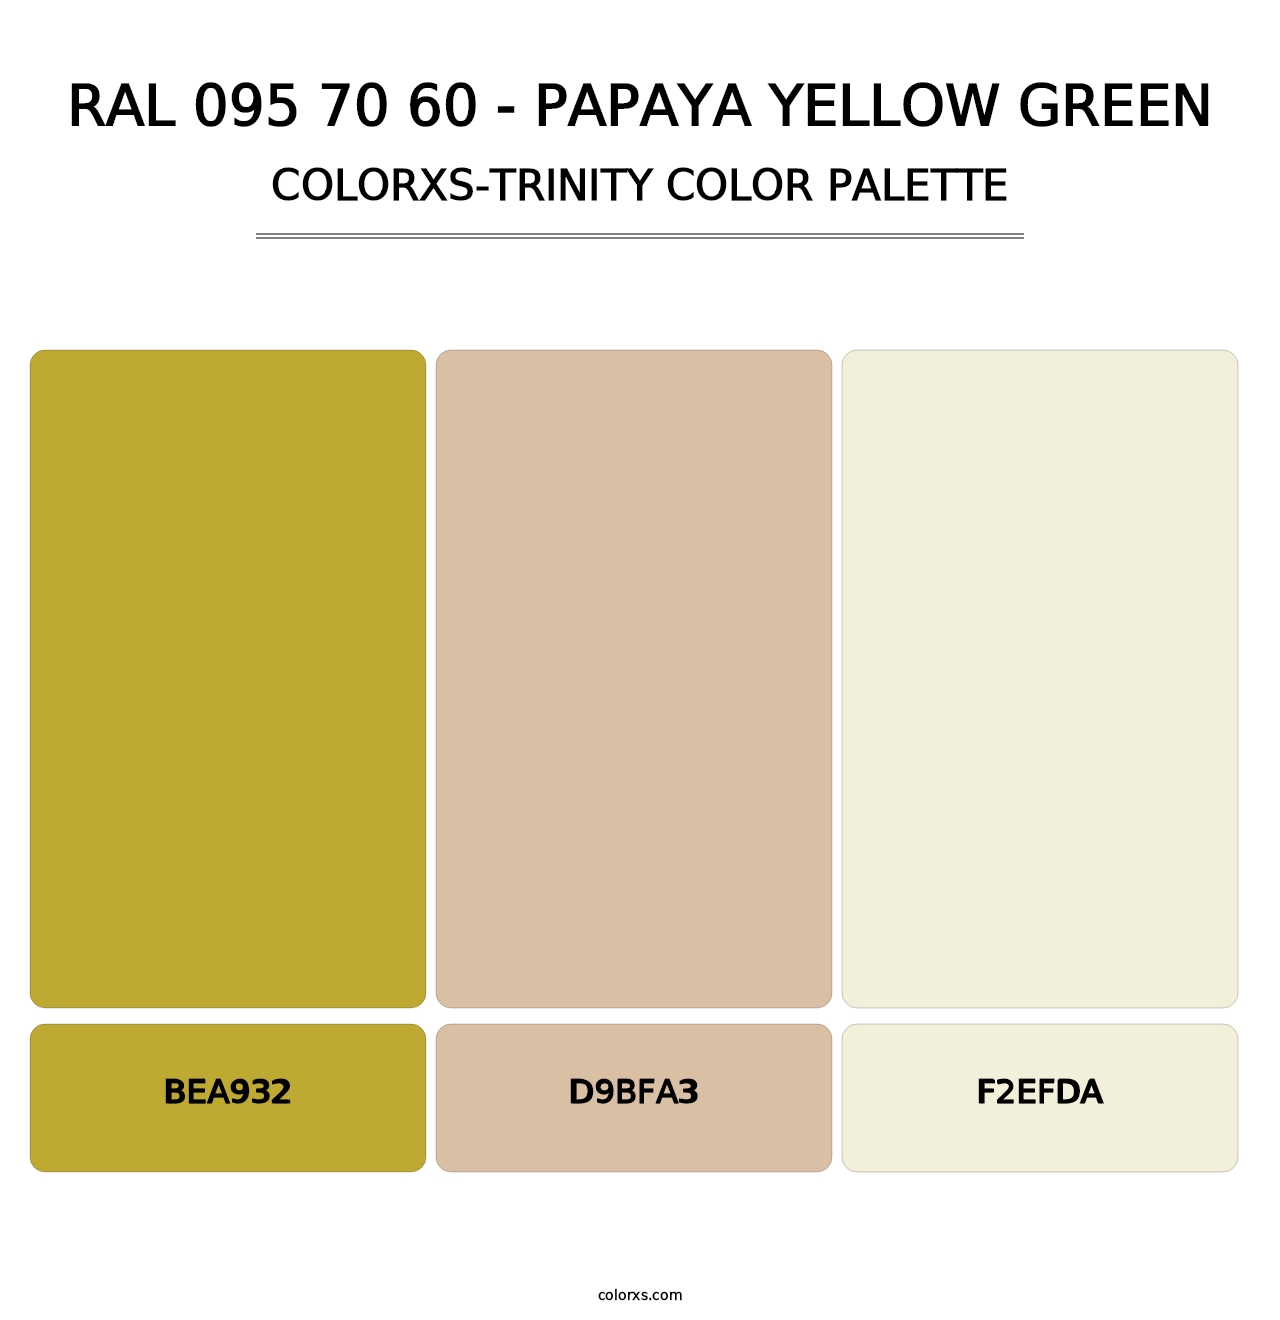 RAL 095 70 60 - Papaya Yellow Green - Colorxs Trinity Palette